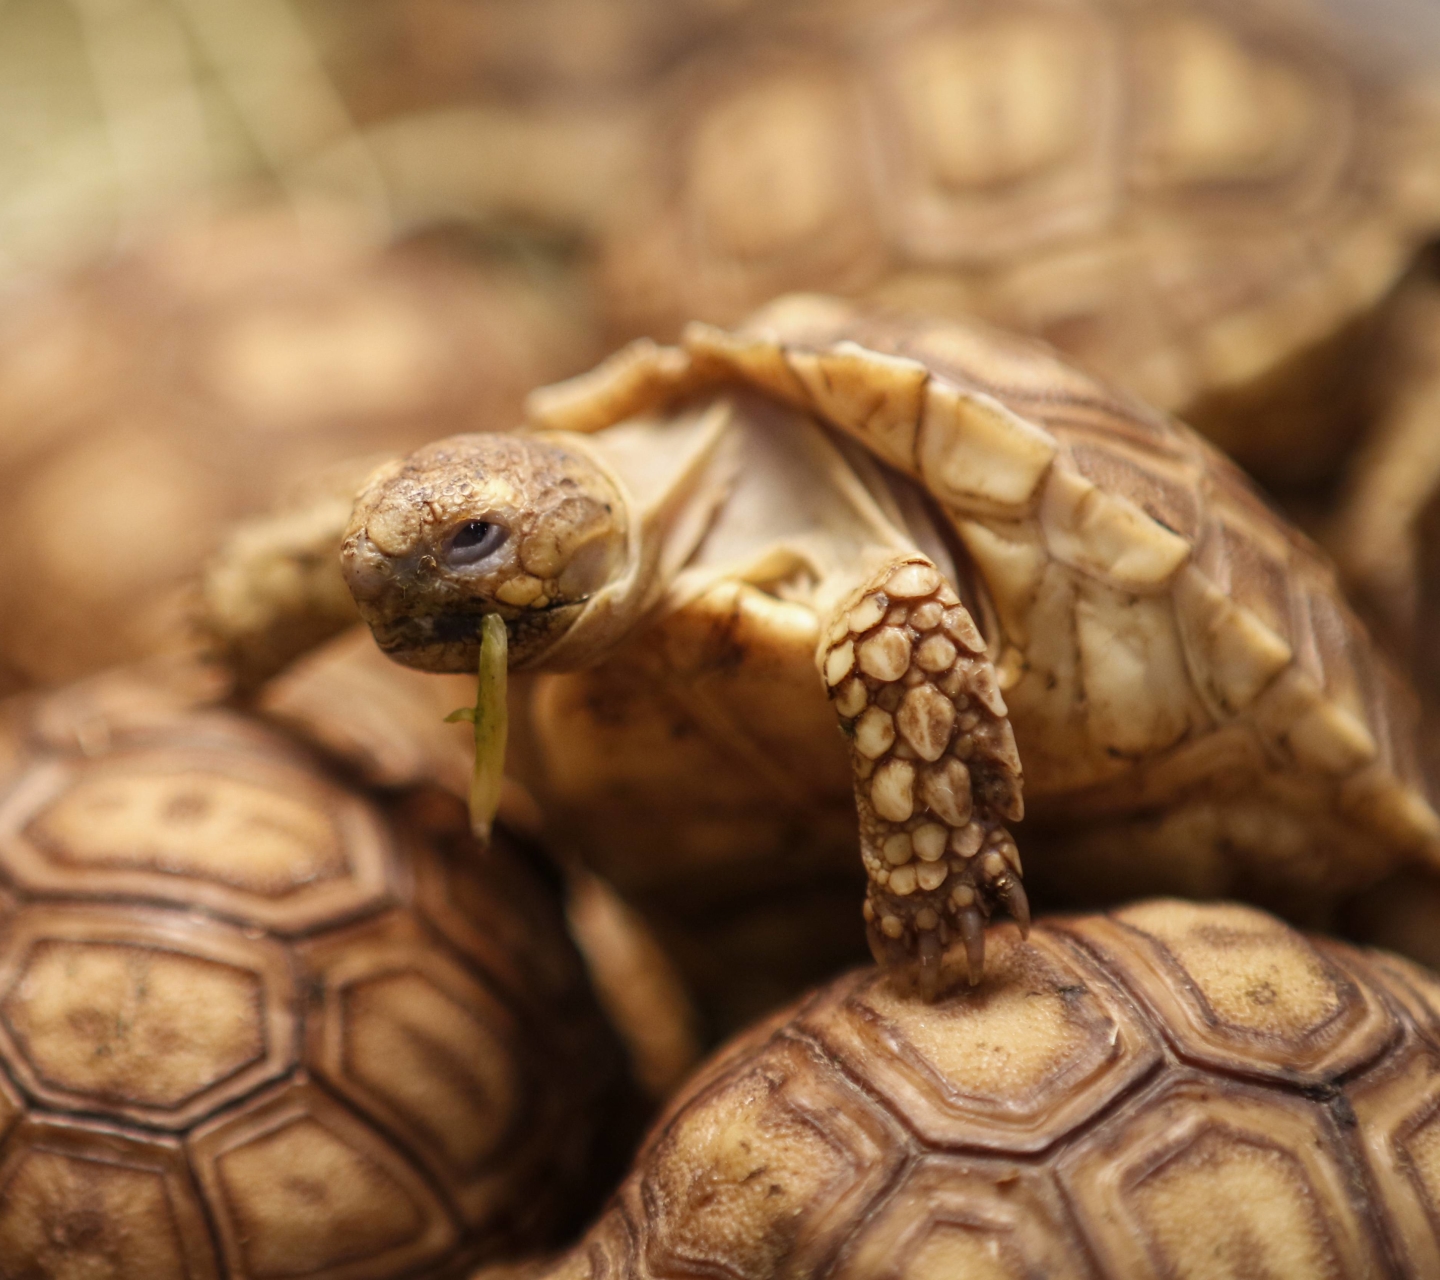 Free download wallpaper Turtles, Animal, Tortoise on your PC desktop